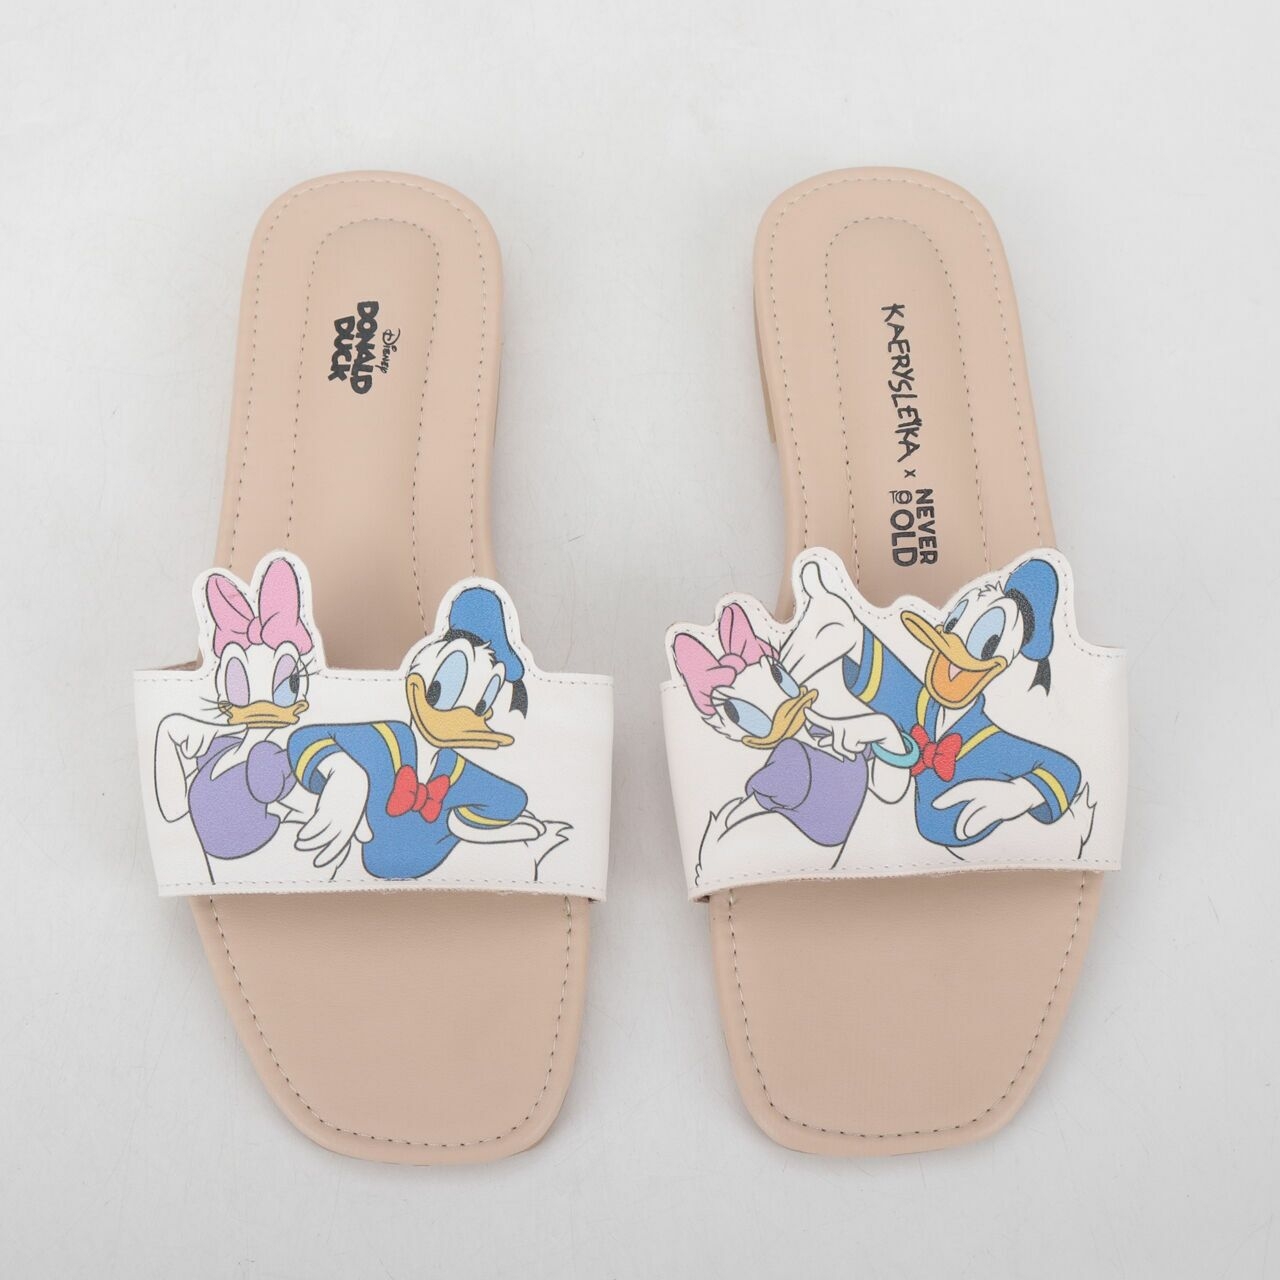 Disney Kaerysleika x Never To Old White Sandals